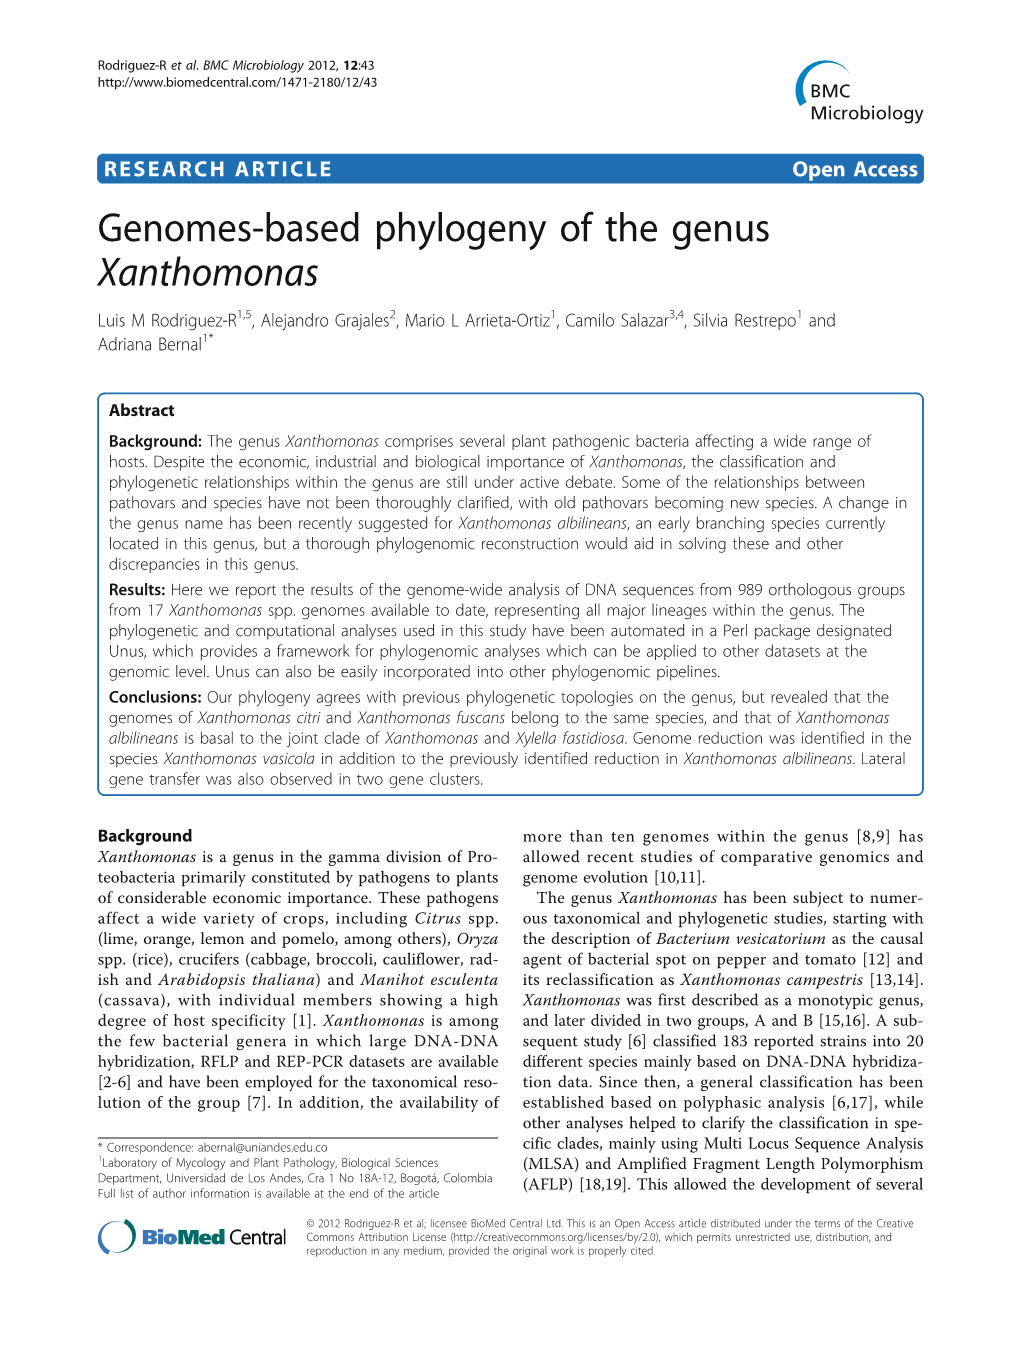 Genomes-Based Phylogeny of the Genus Xanthomonas